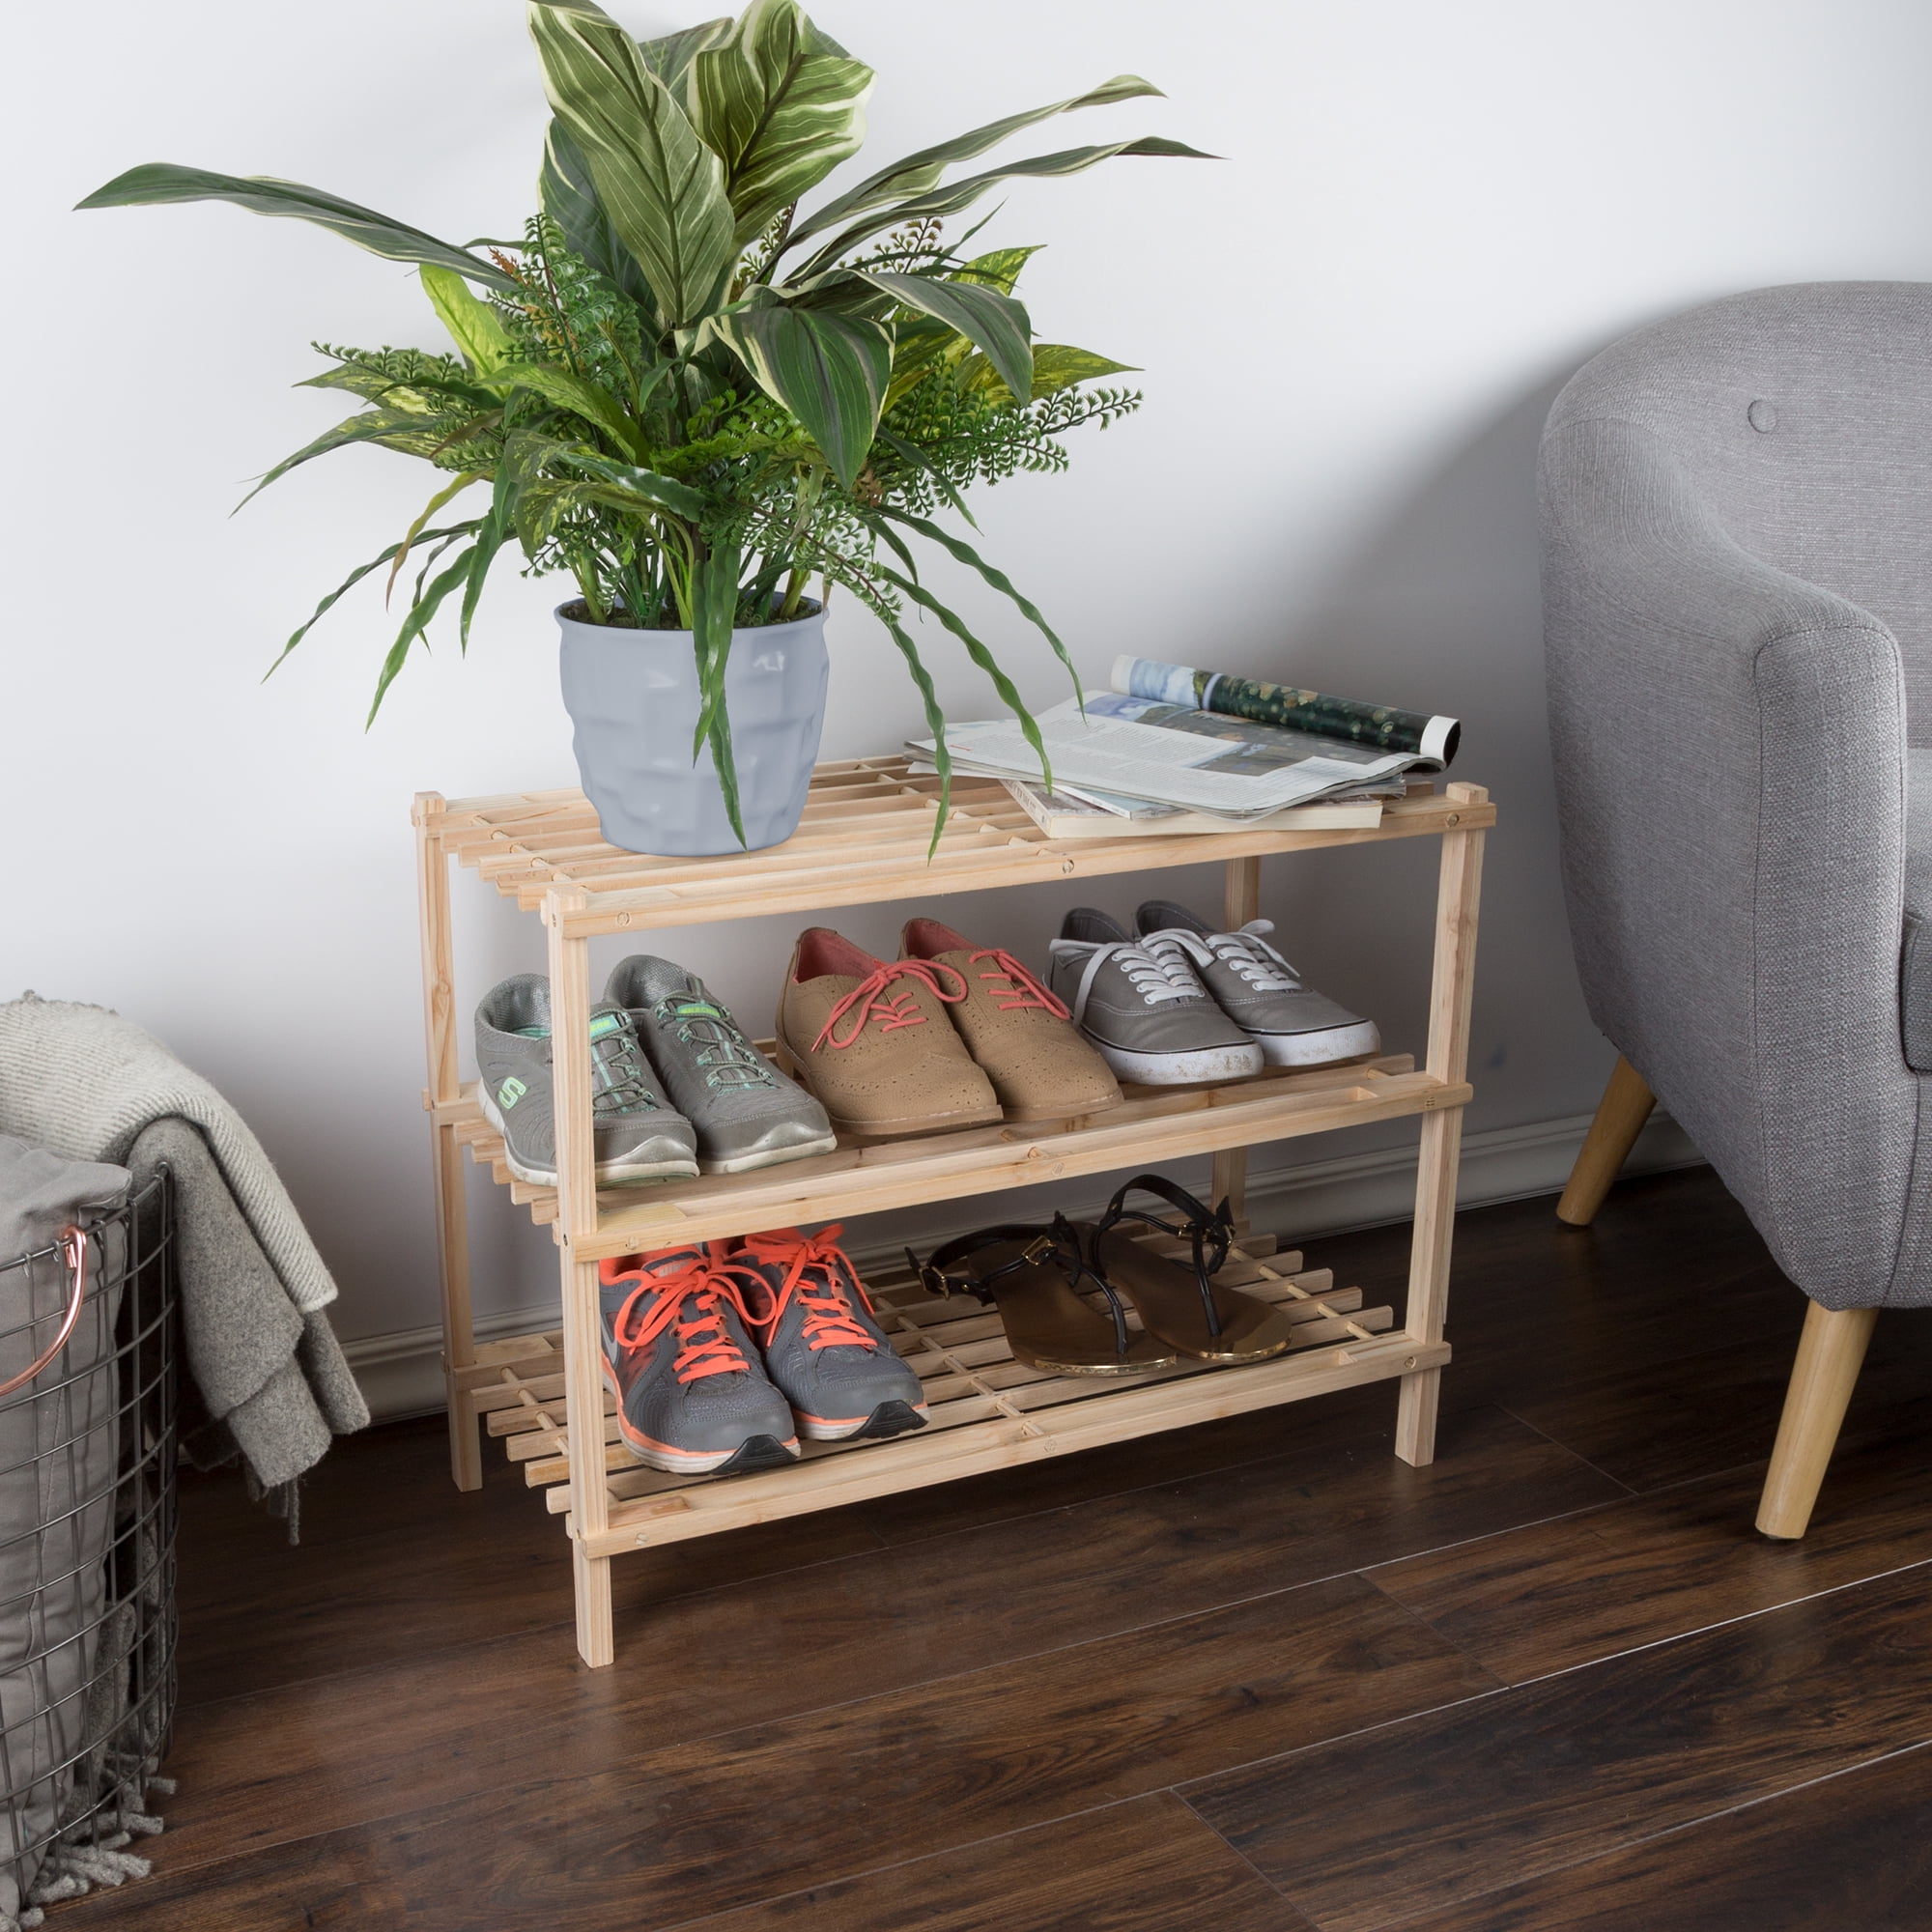 Home Indoor Bedroom Storage Space Organizer 3-Tier Natural Wood Shoe Shelf Rack